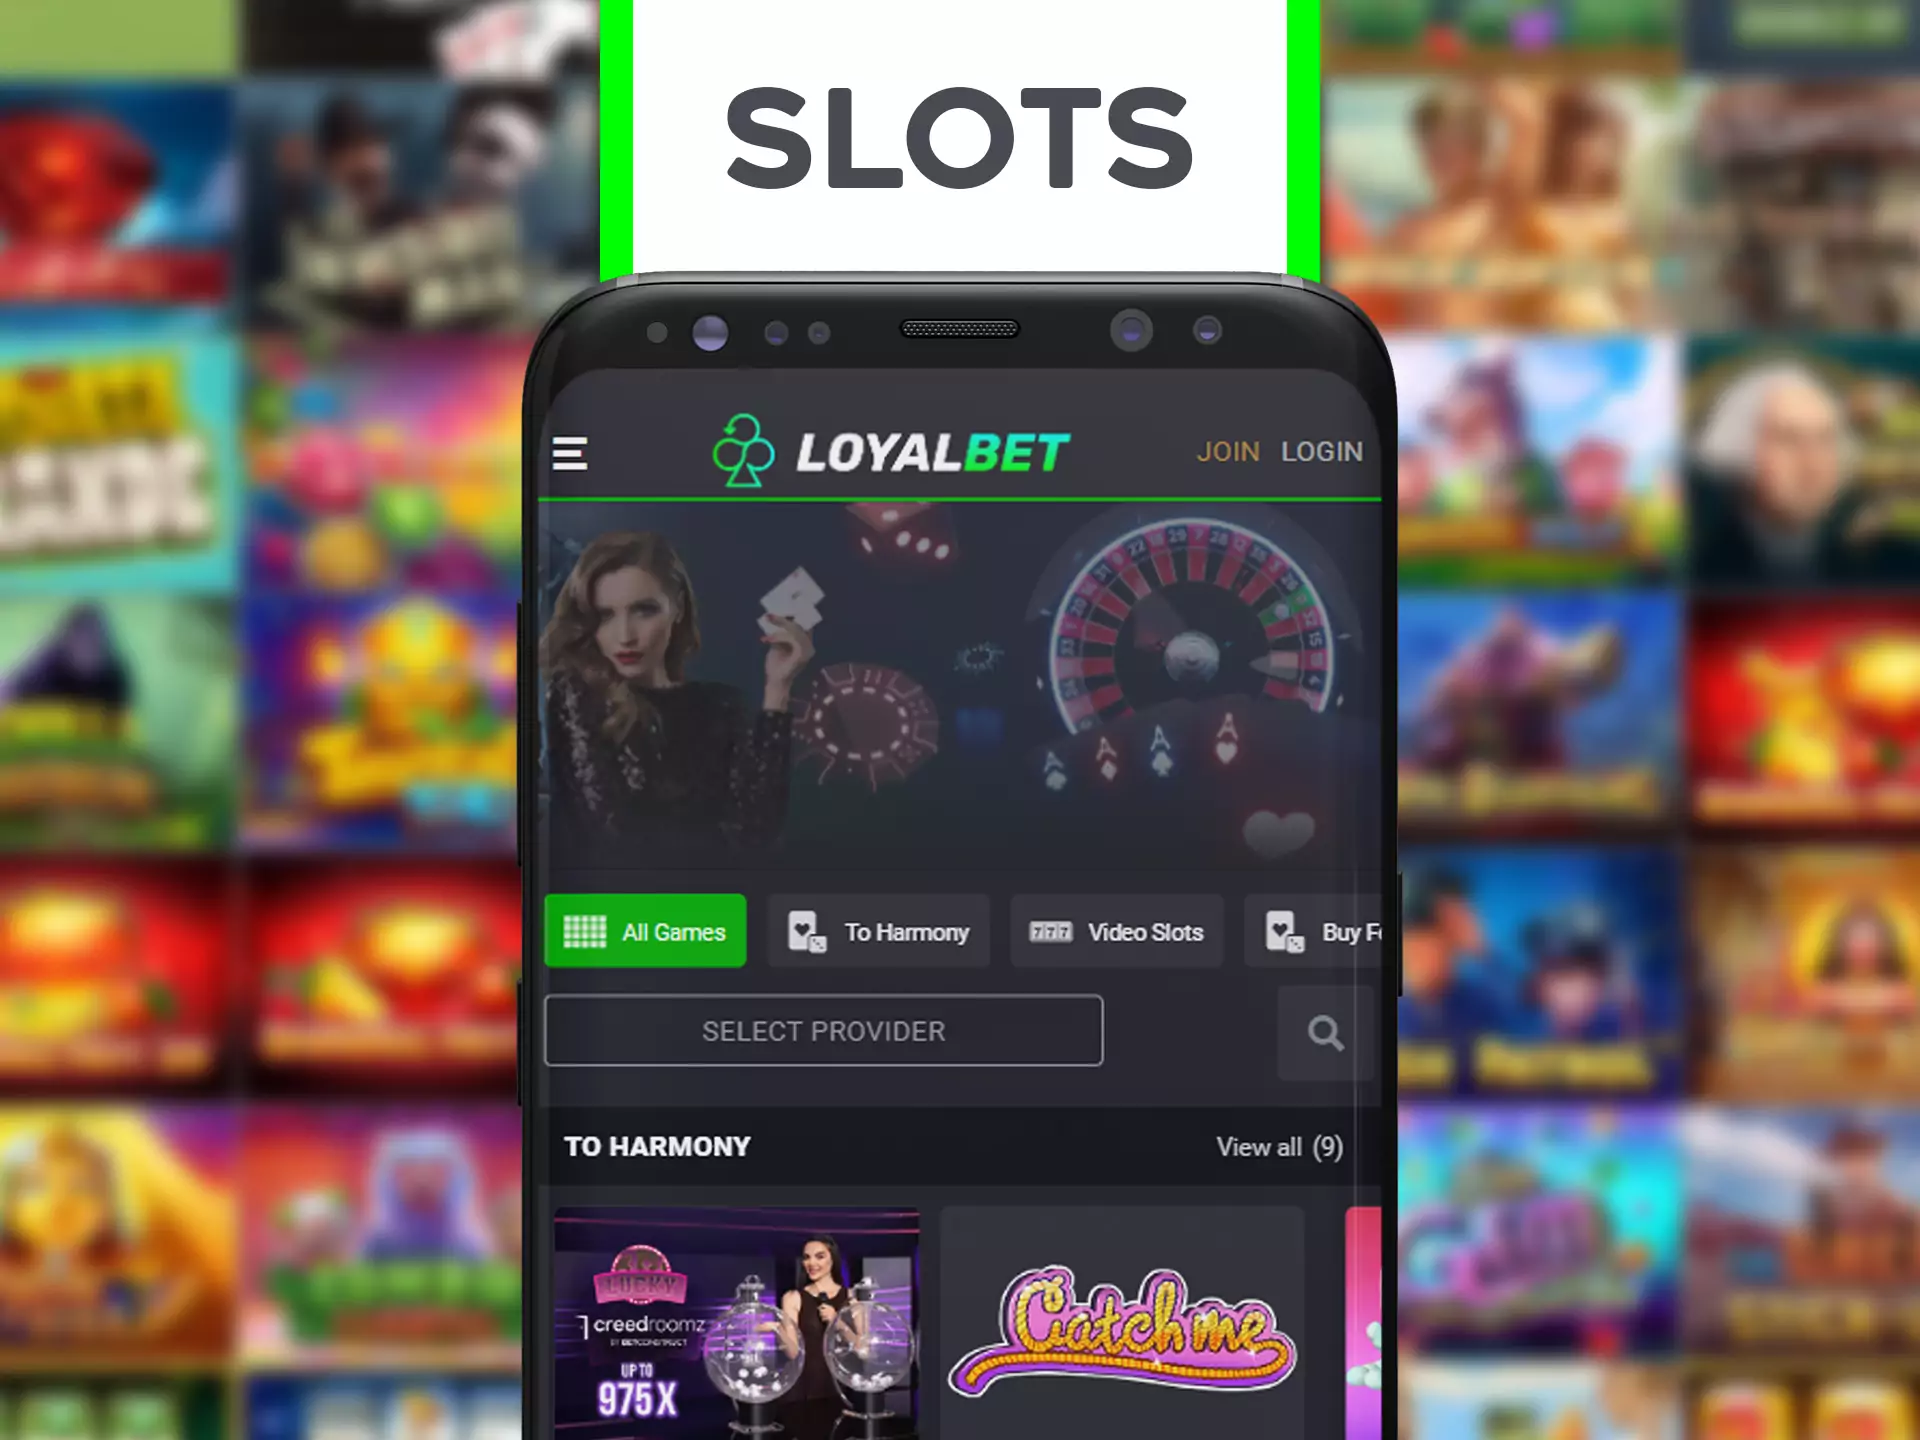 Spin slots using Loyalbet app.